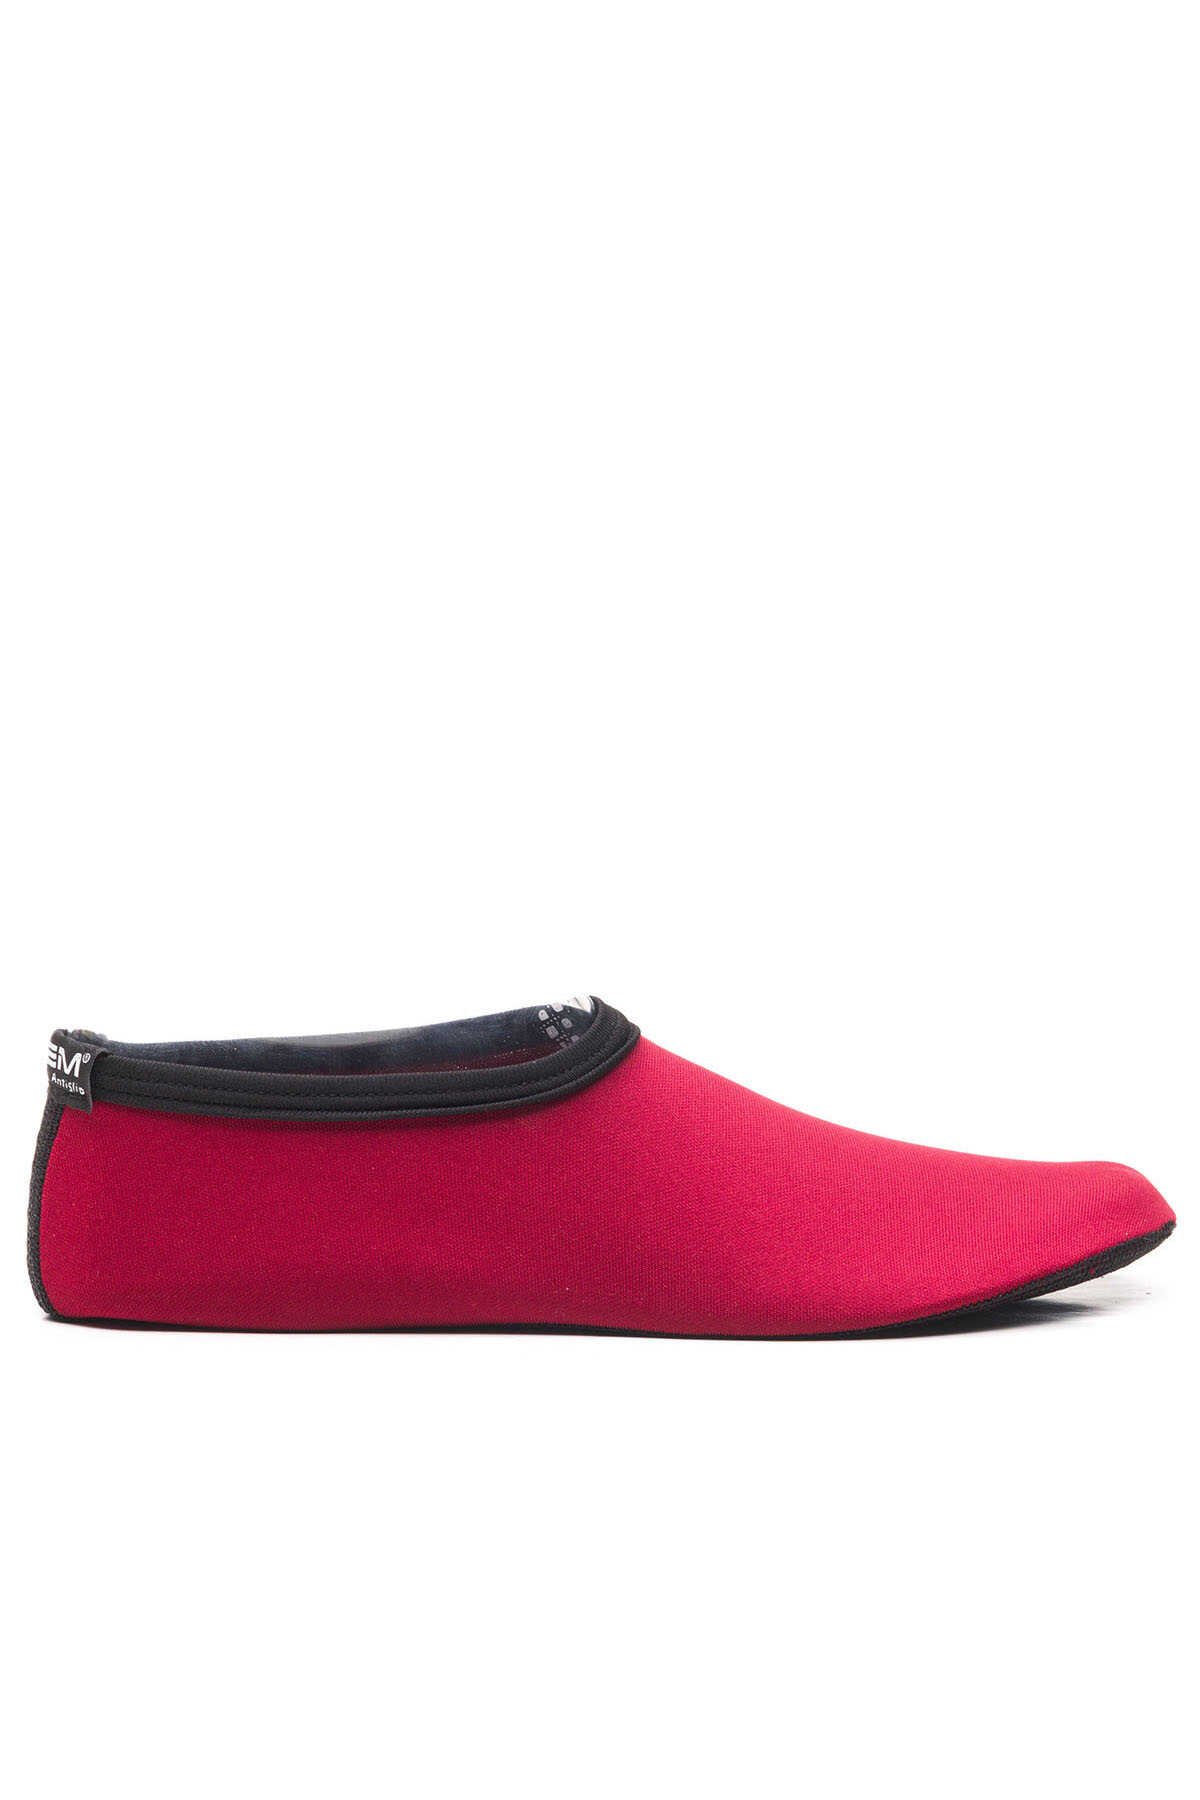 ESEM - ESEM SAVANA 2 Deniz Ayakkabısı Kadın Ayakkabı Kırmızı